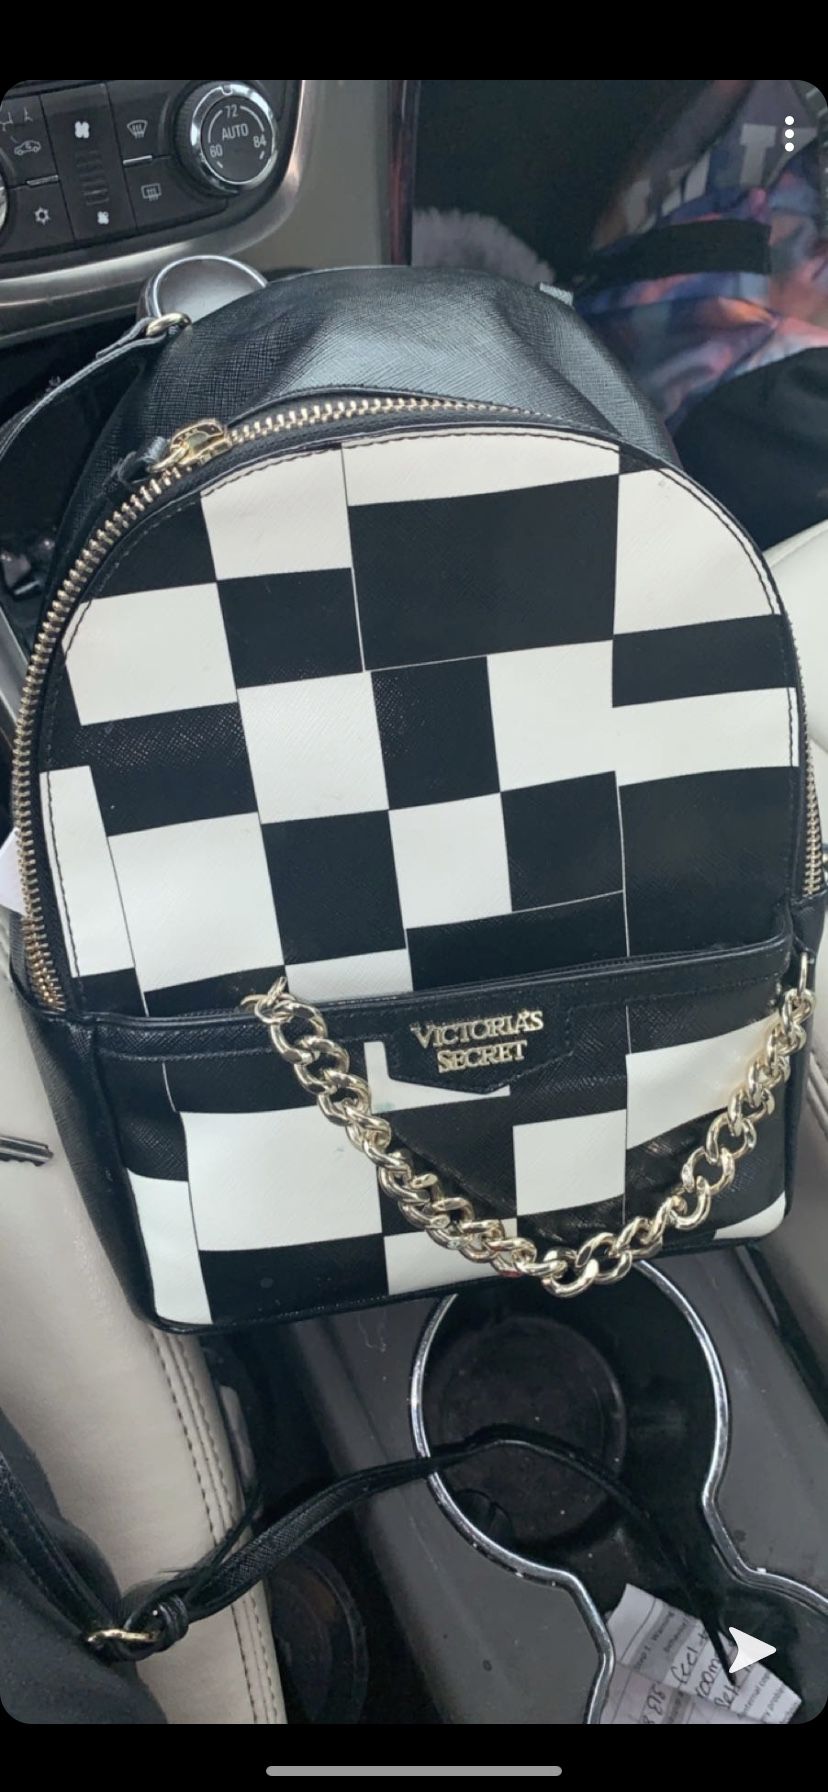 Victoria’s Secret backpack